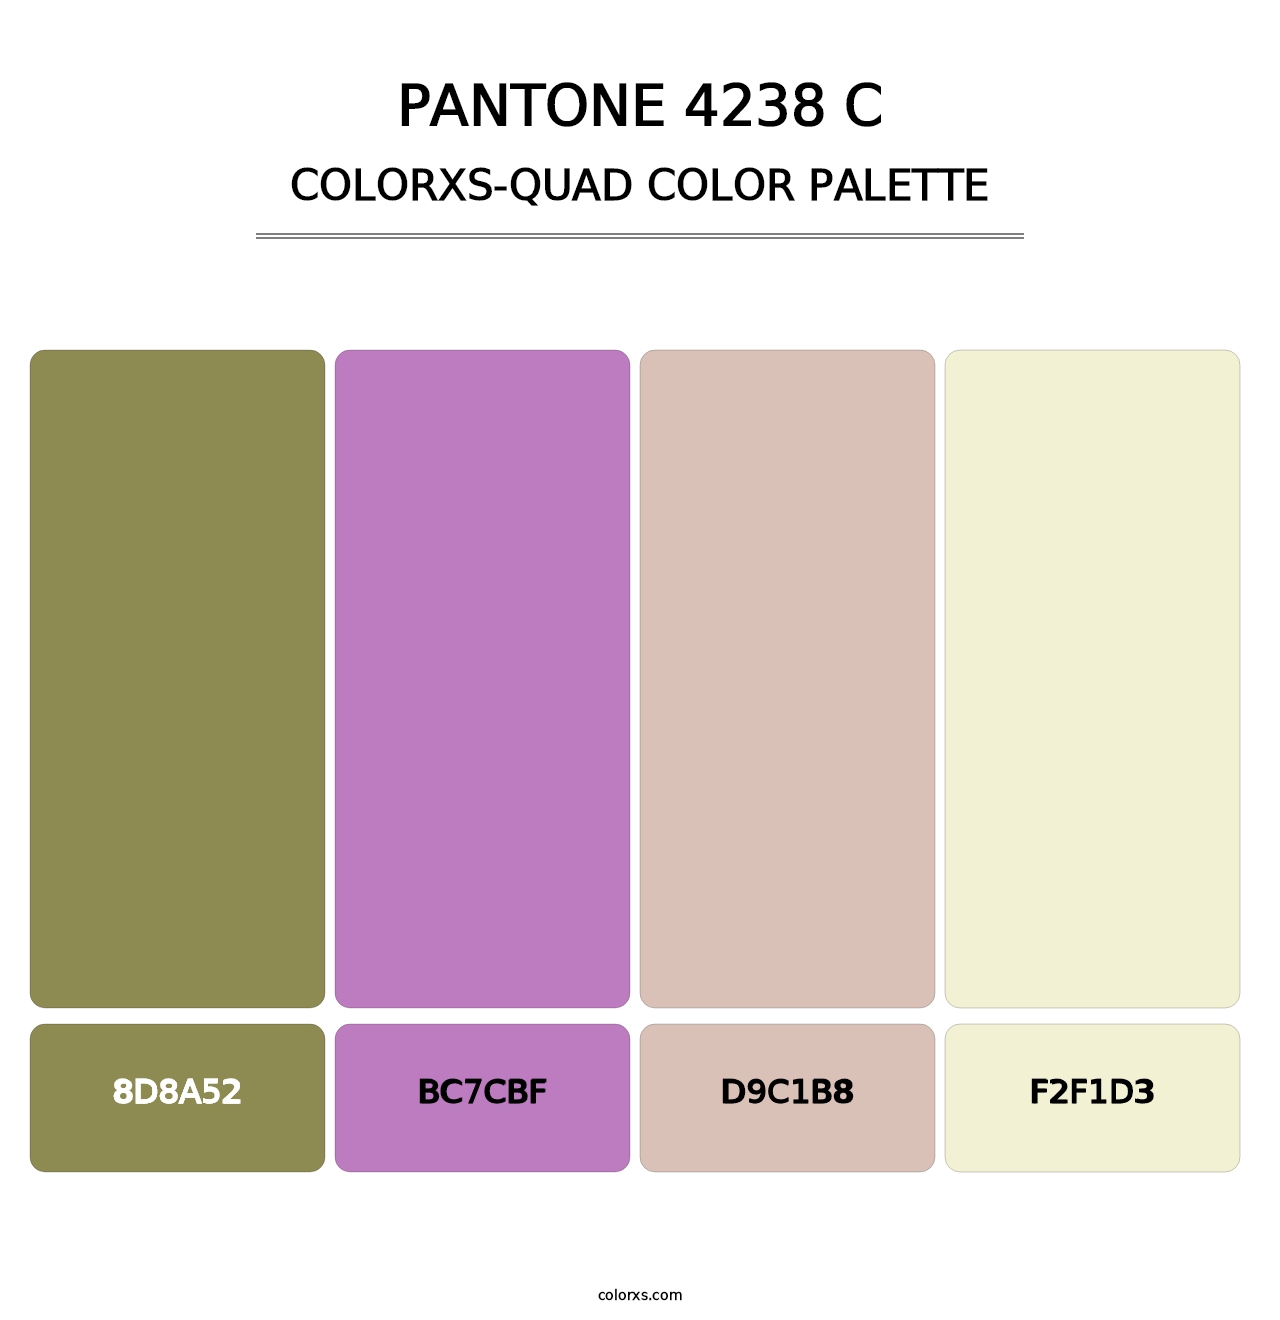 PANTONE 4238 C - Colorxs Quad Palette